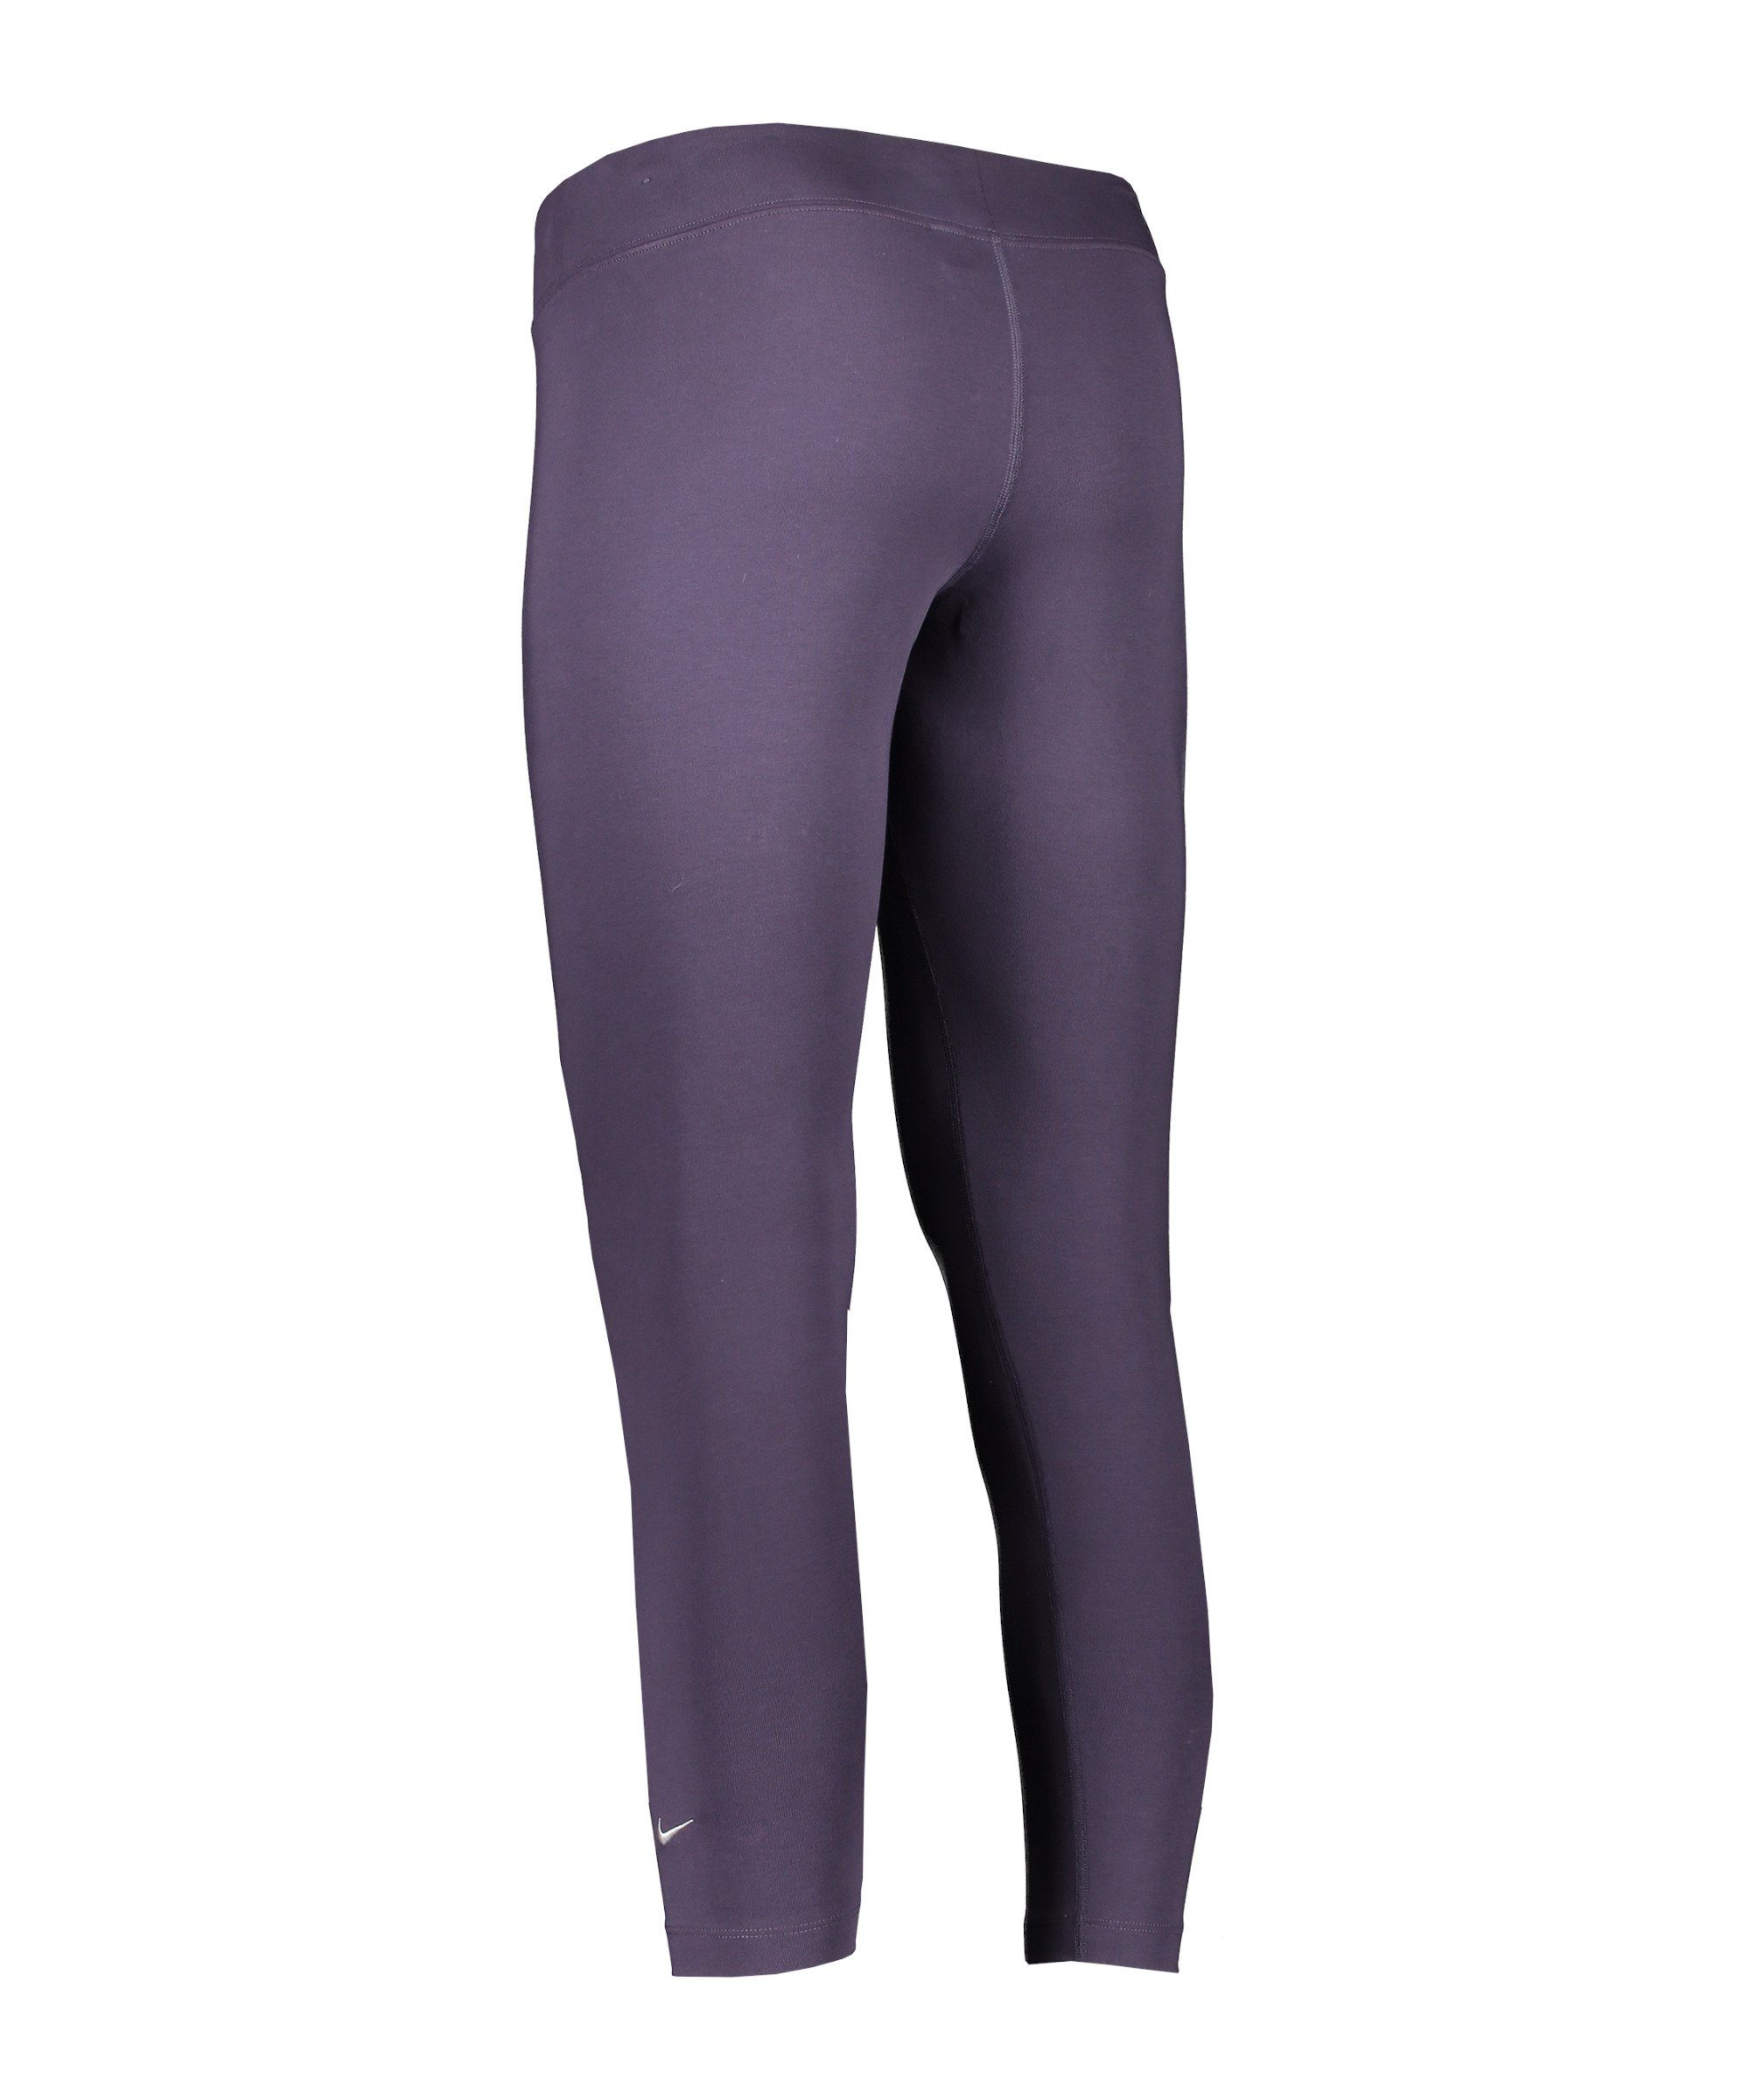 Nike Sportswear Jogger Pants Essentials 7/8 Damen lilaweiss Leggings